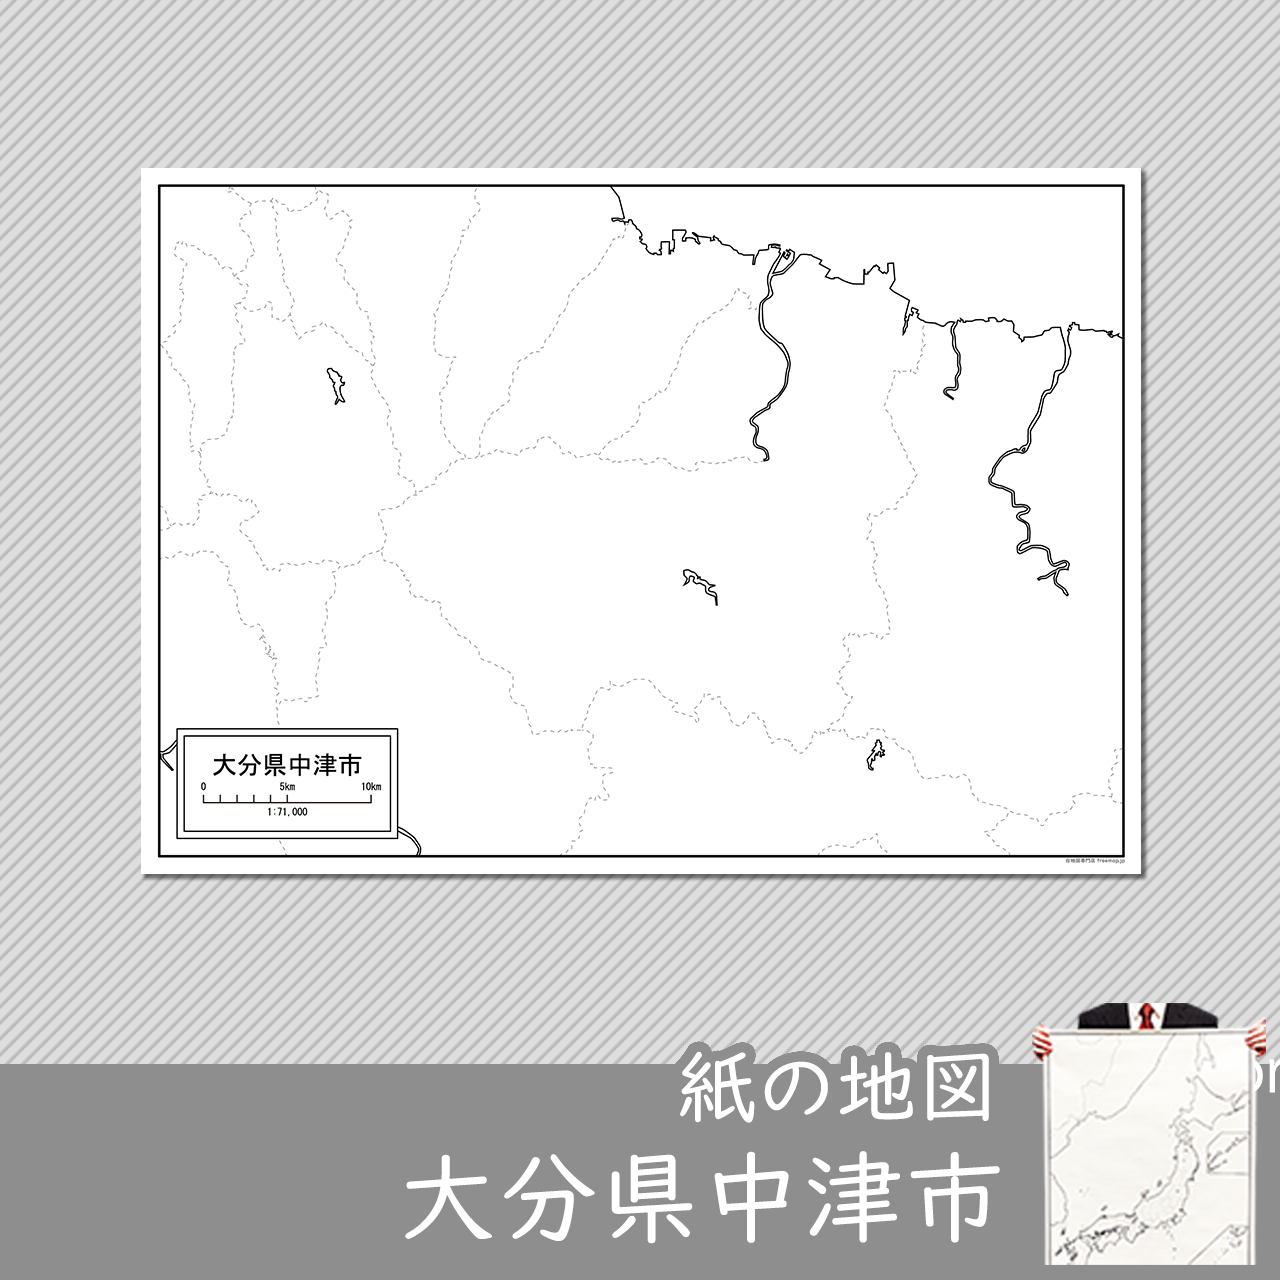 中津市の紙の白地図のサムネイル